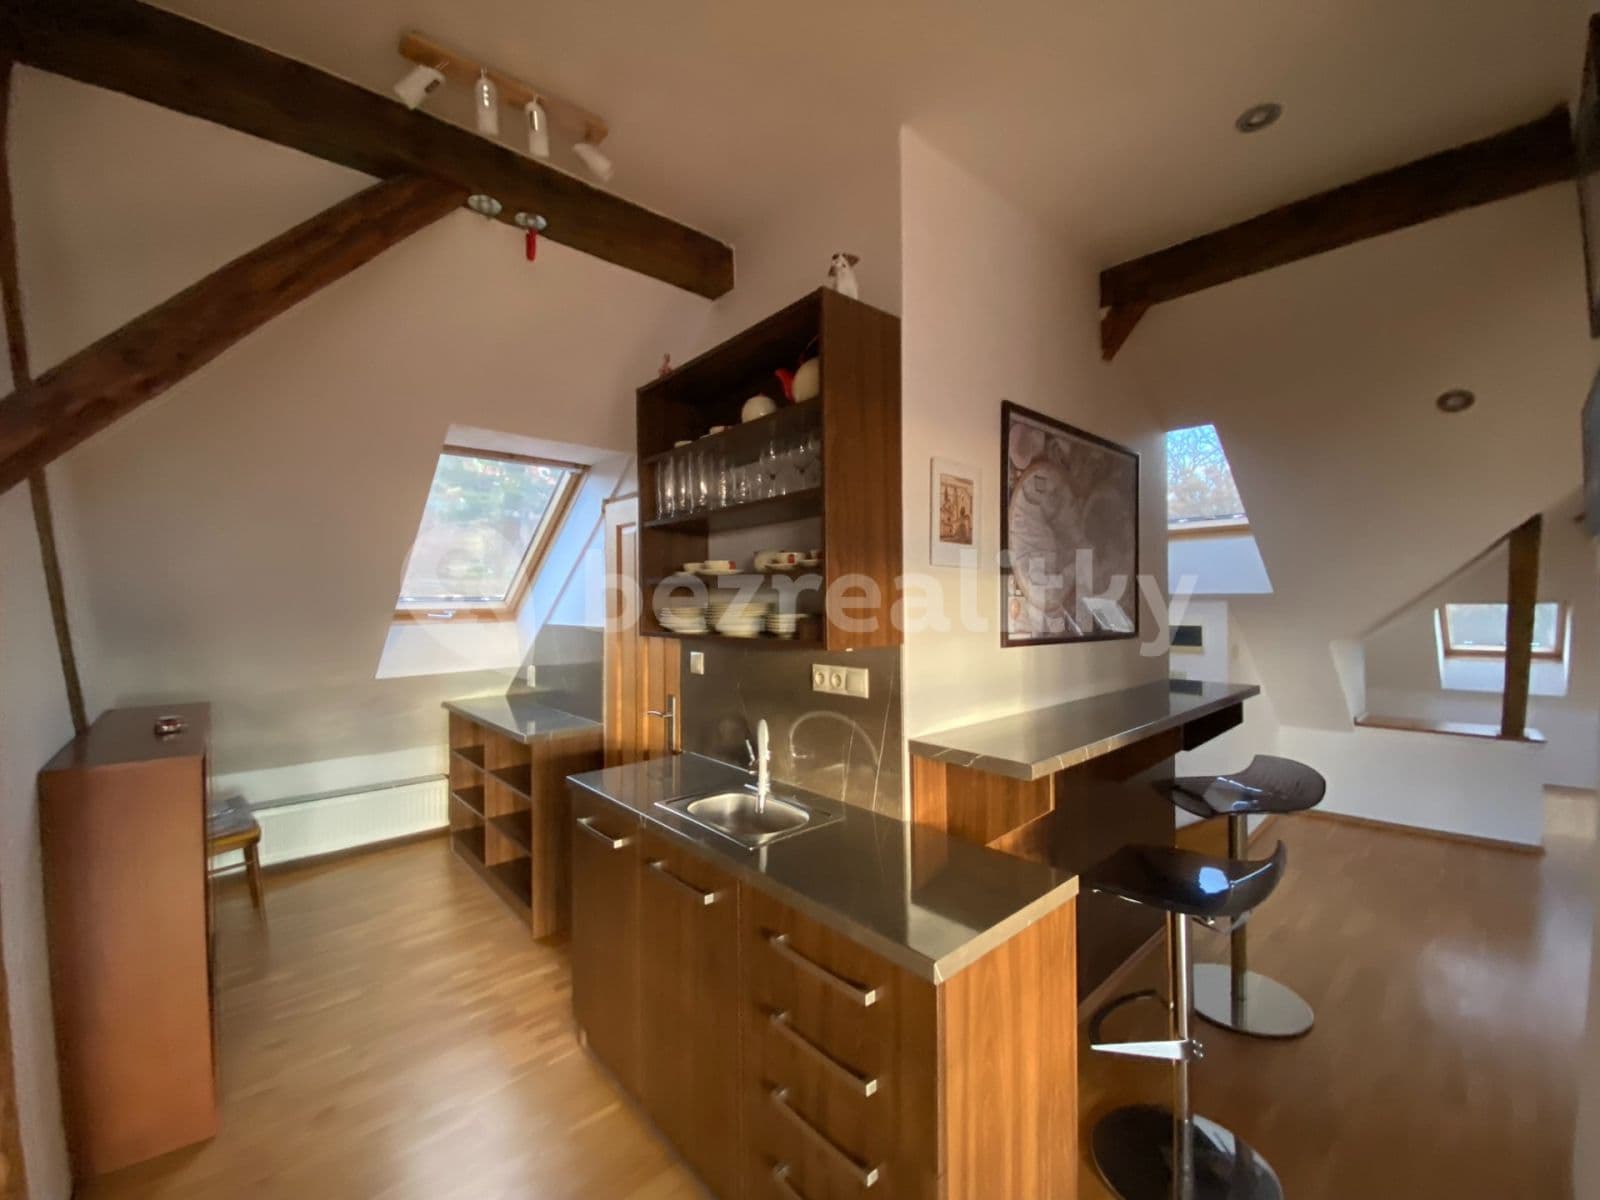 1 bedroom with open-plan kitchen flat to rent, 82 m², Viniční, Brno, Jihomoravský Region